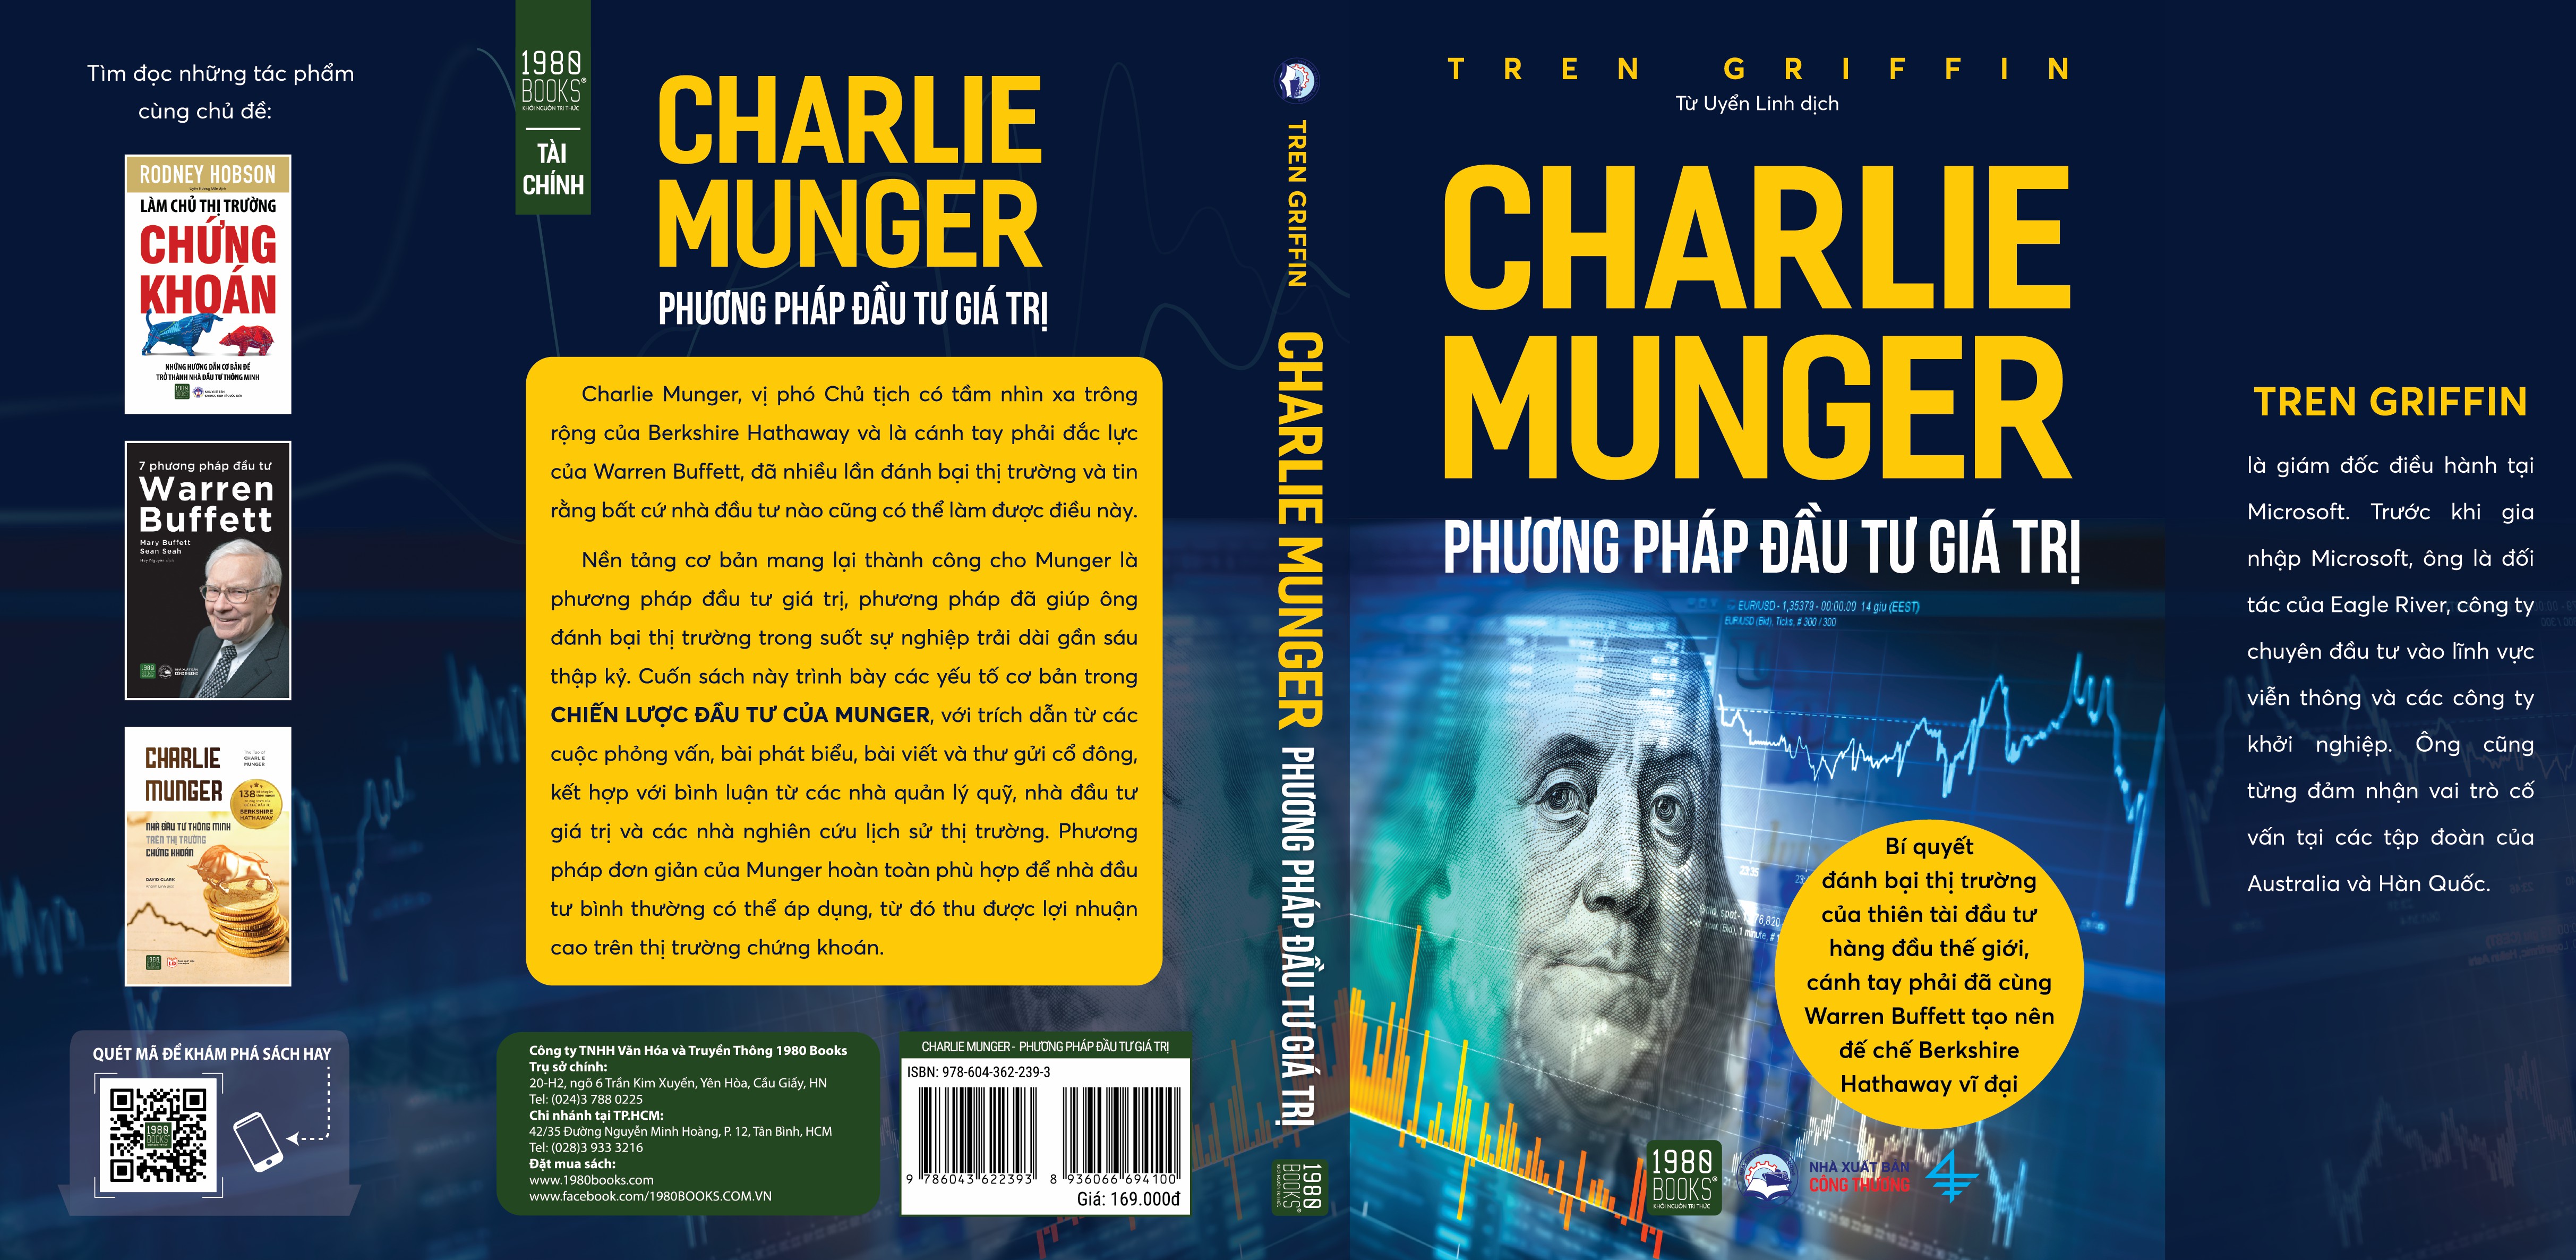 Charlie Munger - Phương pháp đầu tư giá trị - Tren Griffin - TTR Next Generation